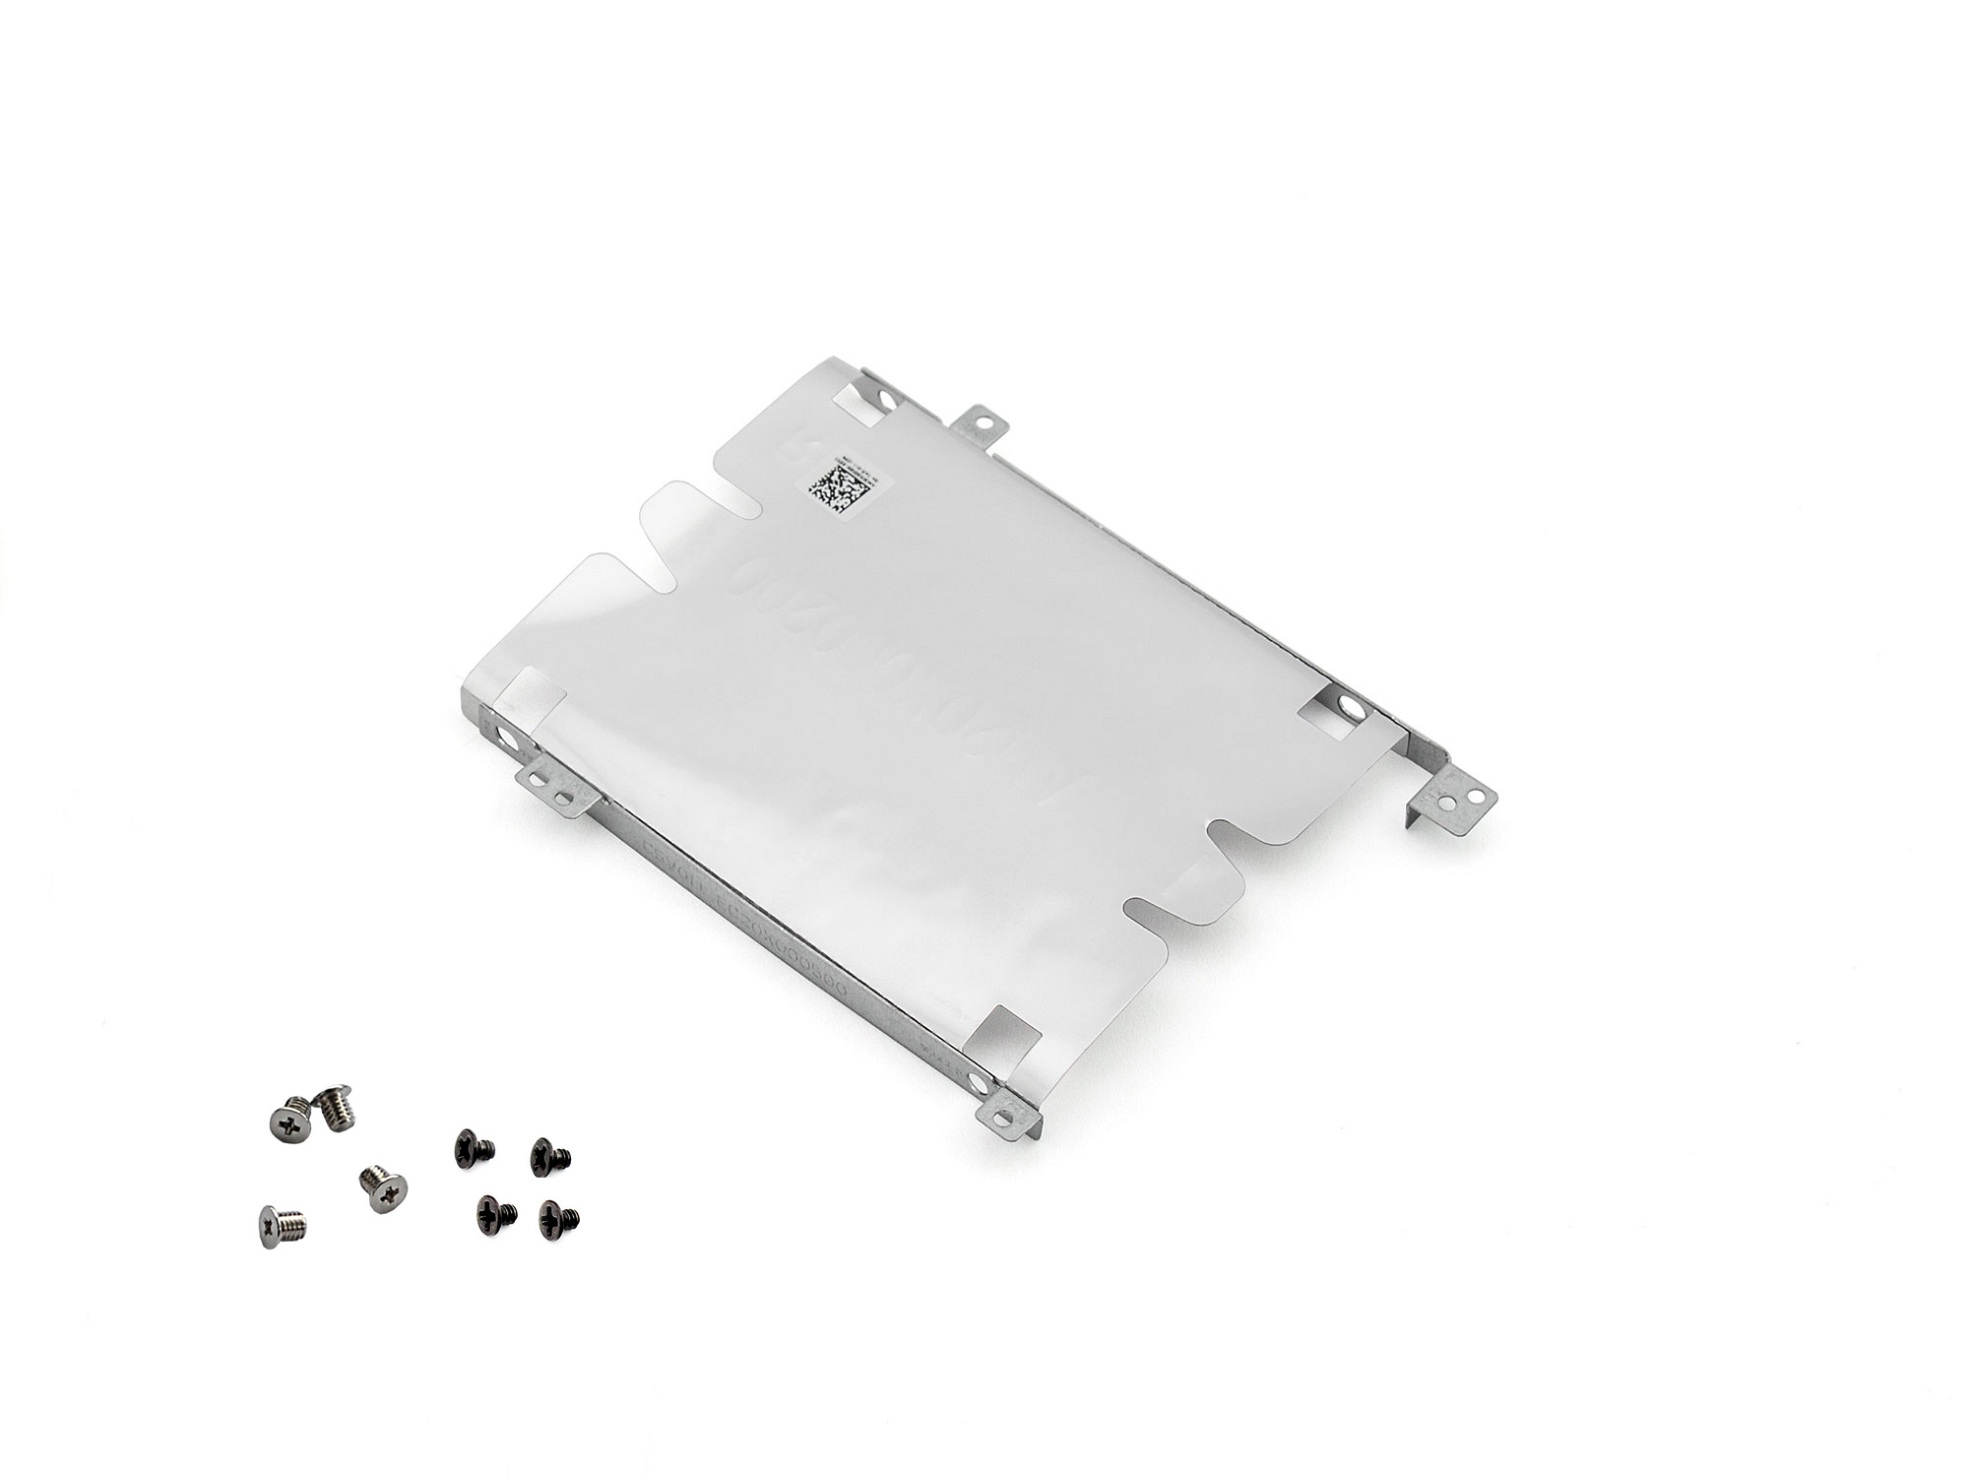 Festplatten-Einbaurahmen für den 2. Festplatten Schacht inkl. Schrauben Original für Acer Nitro 5 (AN515-52)